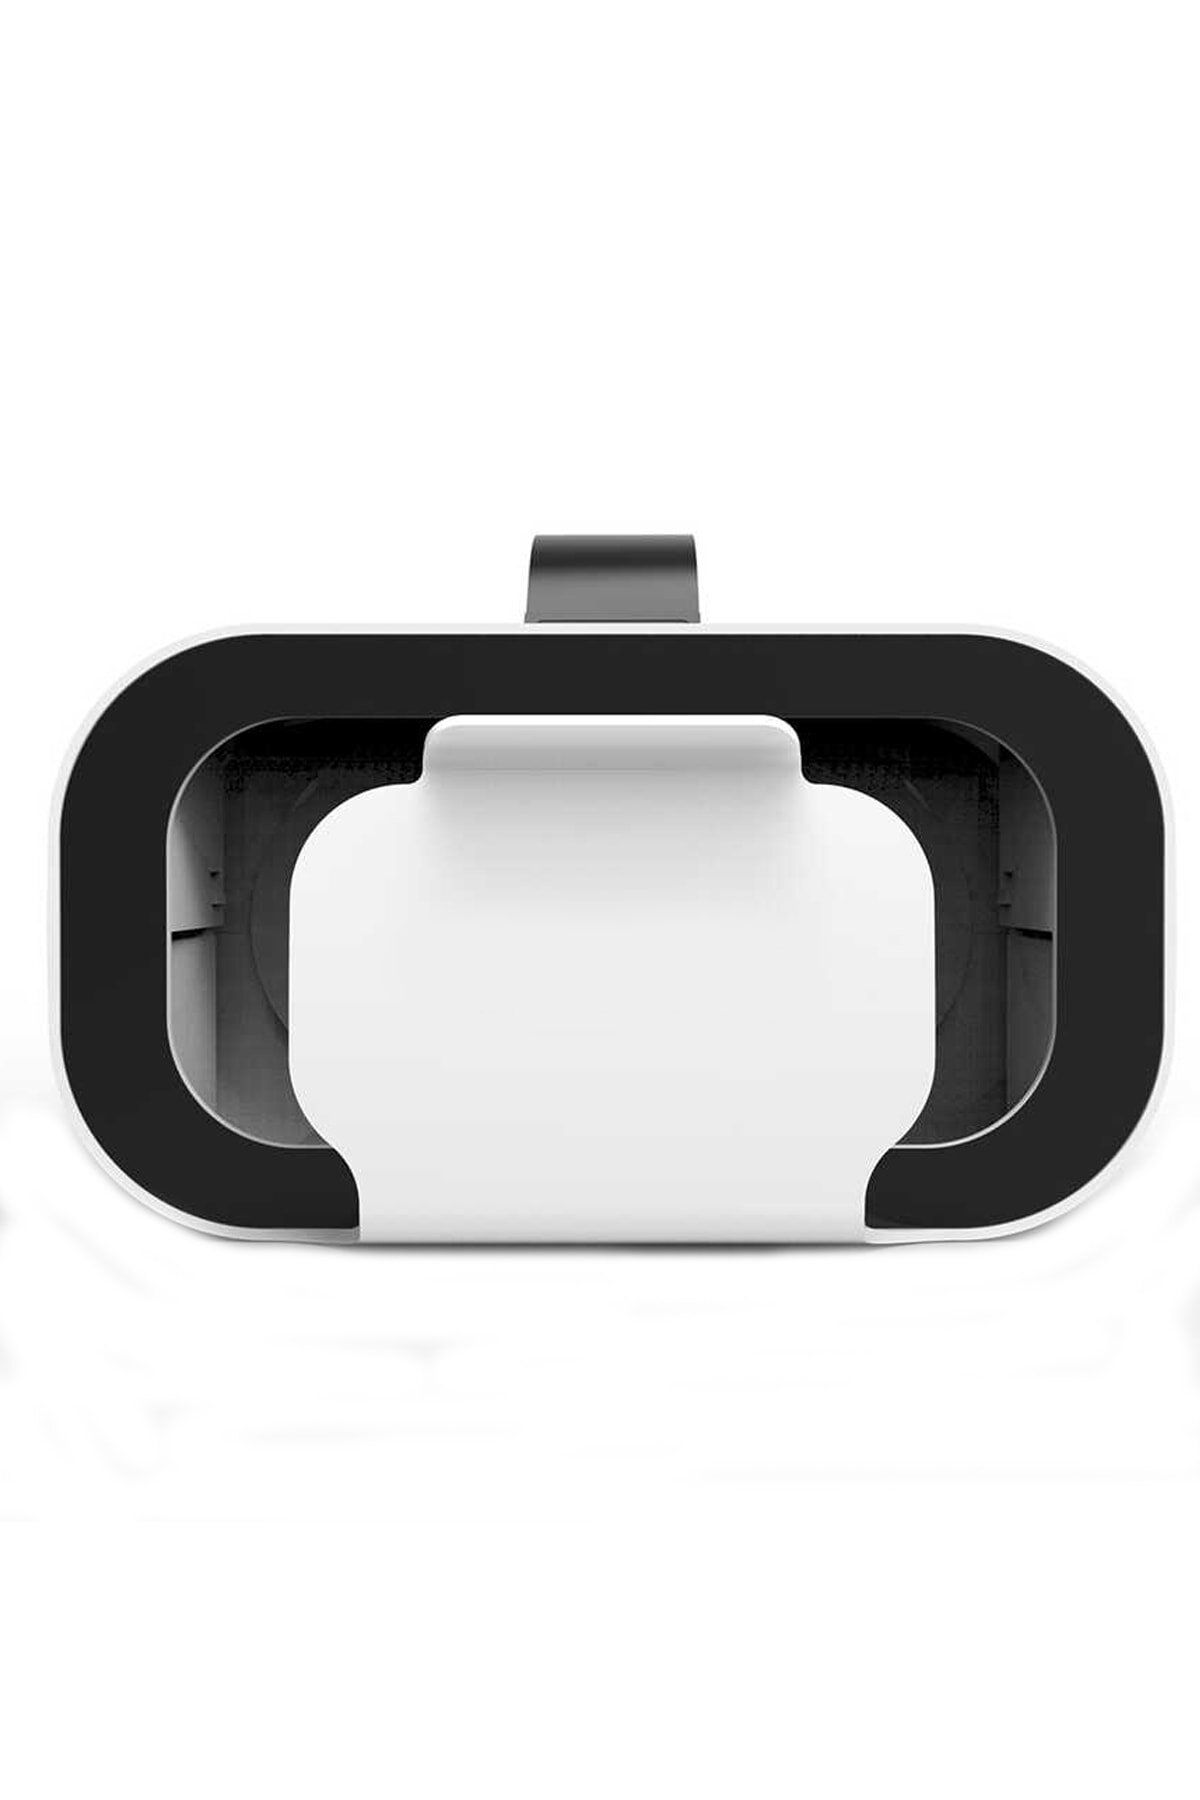 Dolia Iphone 11 Için 3d Vr Sanal Gerçeklik Gözlüğü Kumandalı